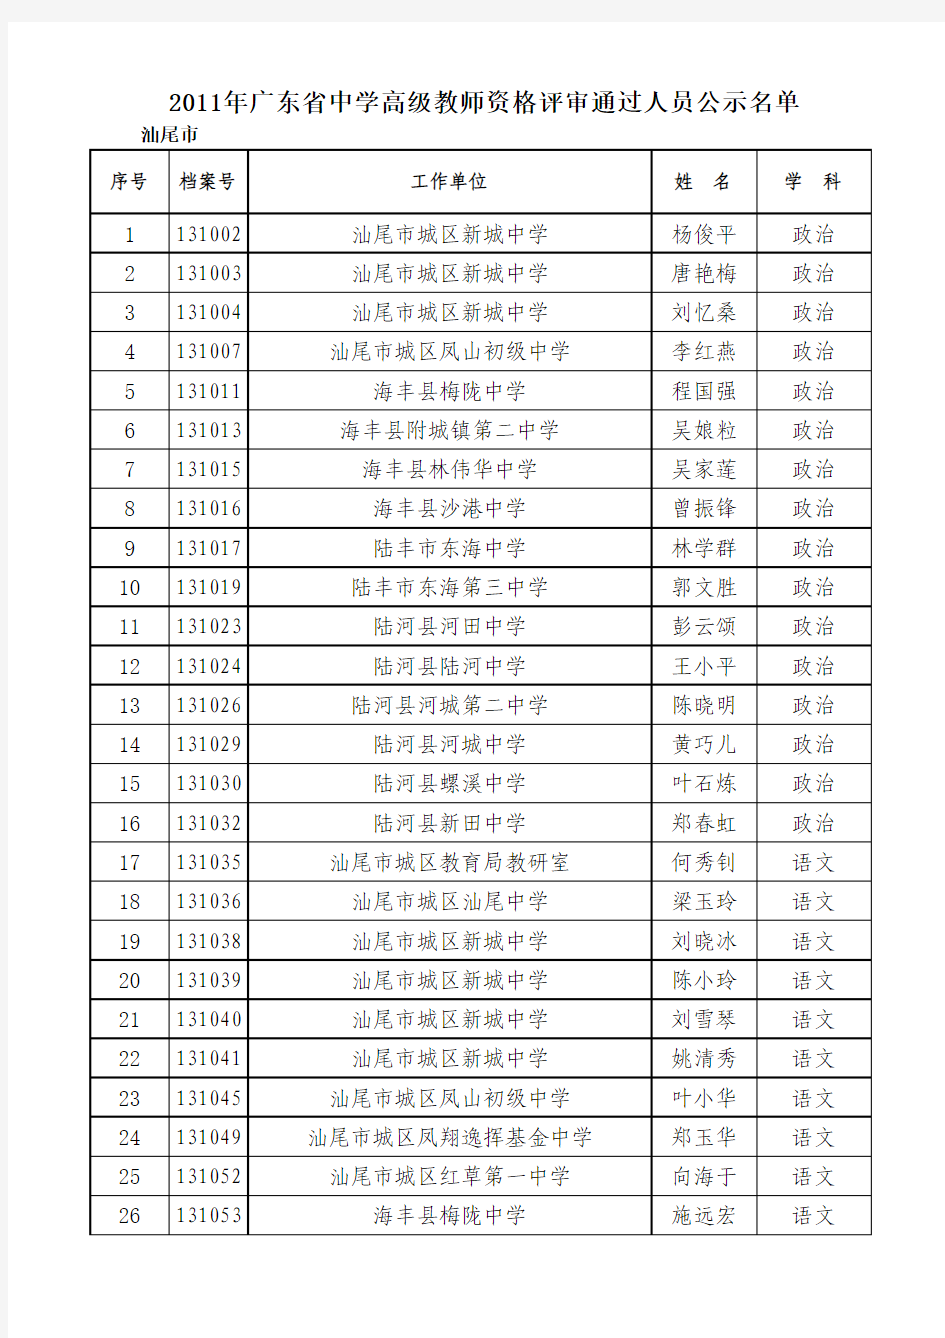 2011年中学高级教师公示名单(有分类)